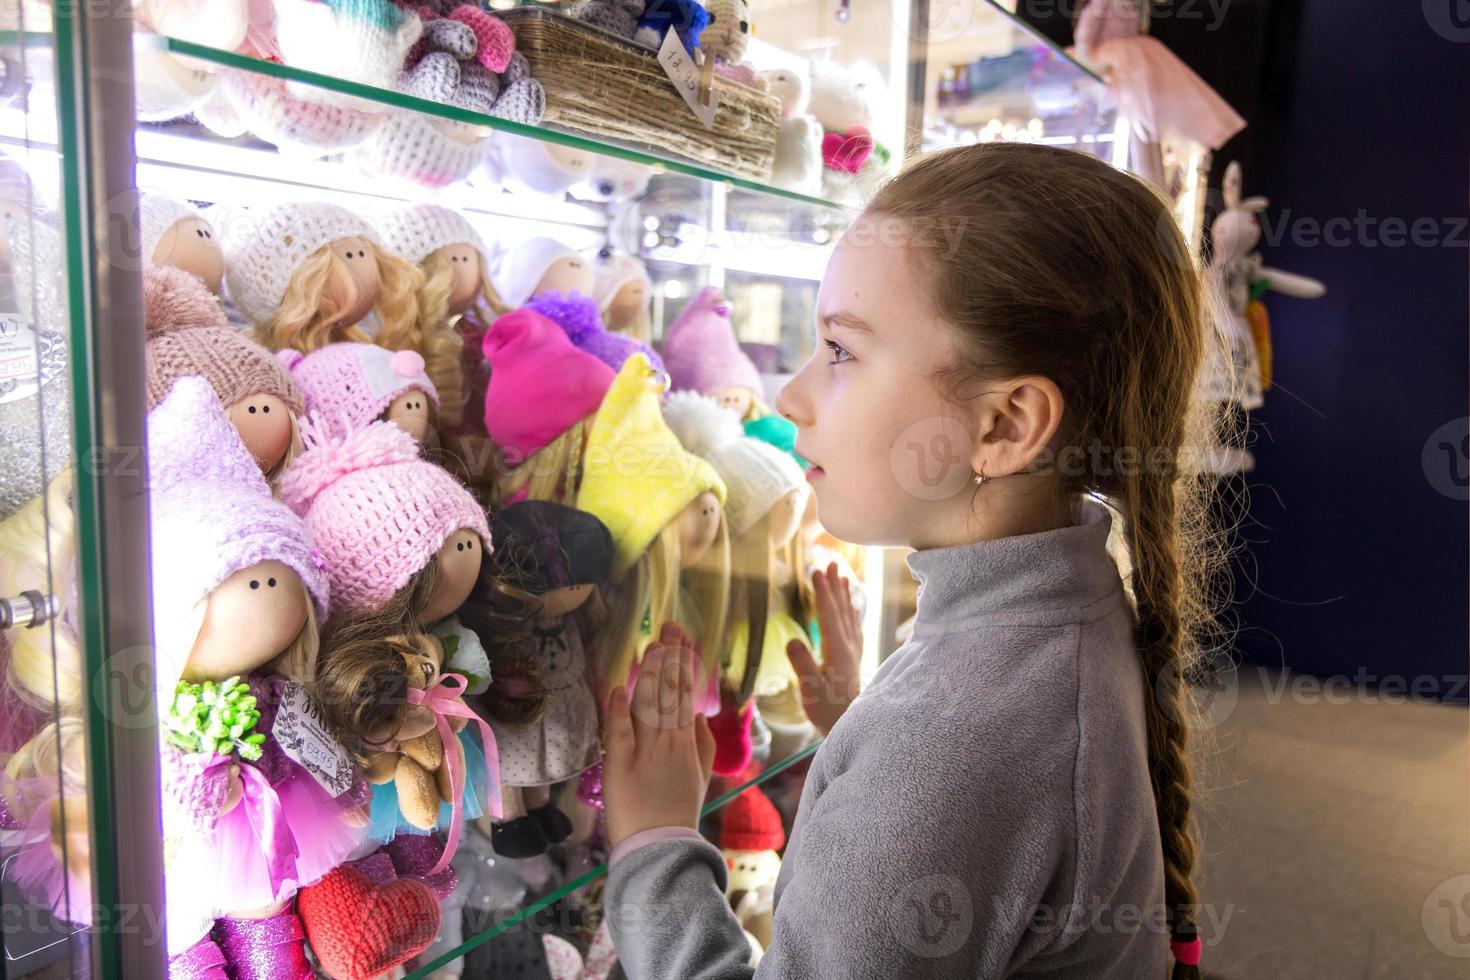 weinig schattig meisje looks met bewondering Bij handgemaakt poppen in een winkel venster foto